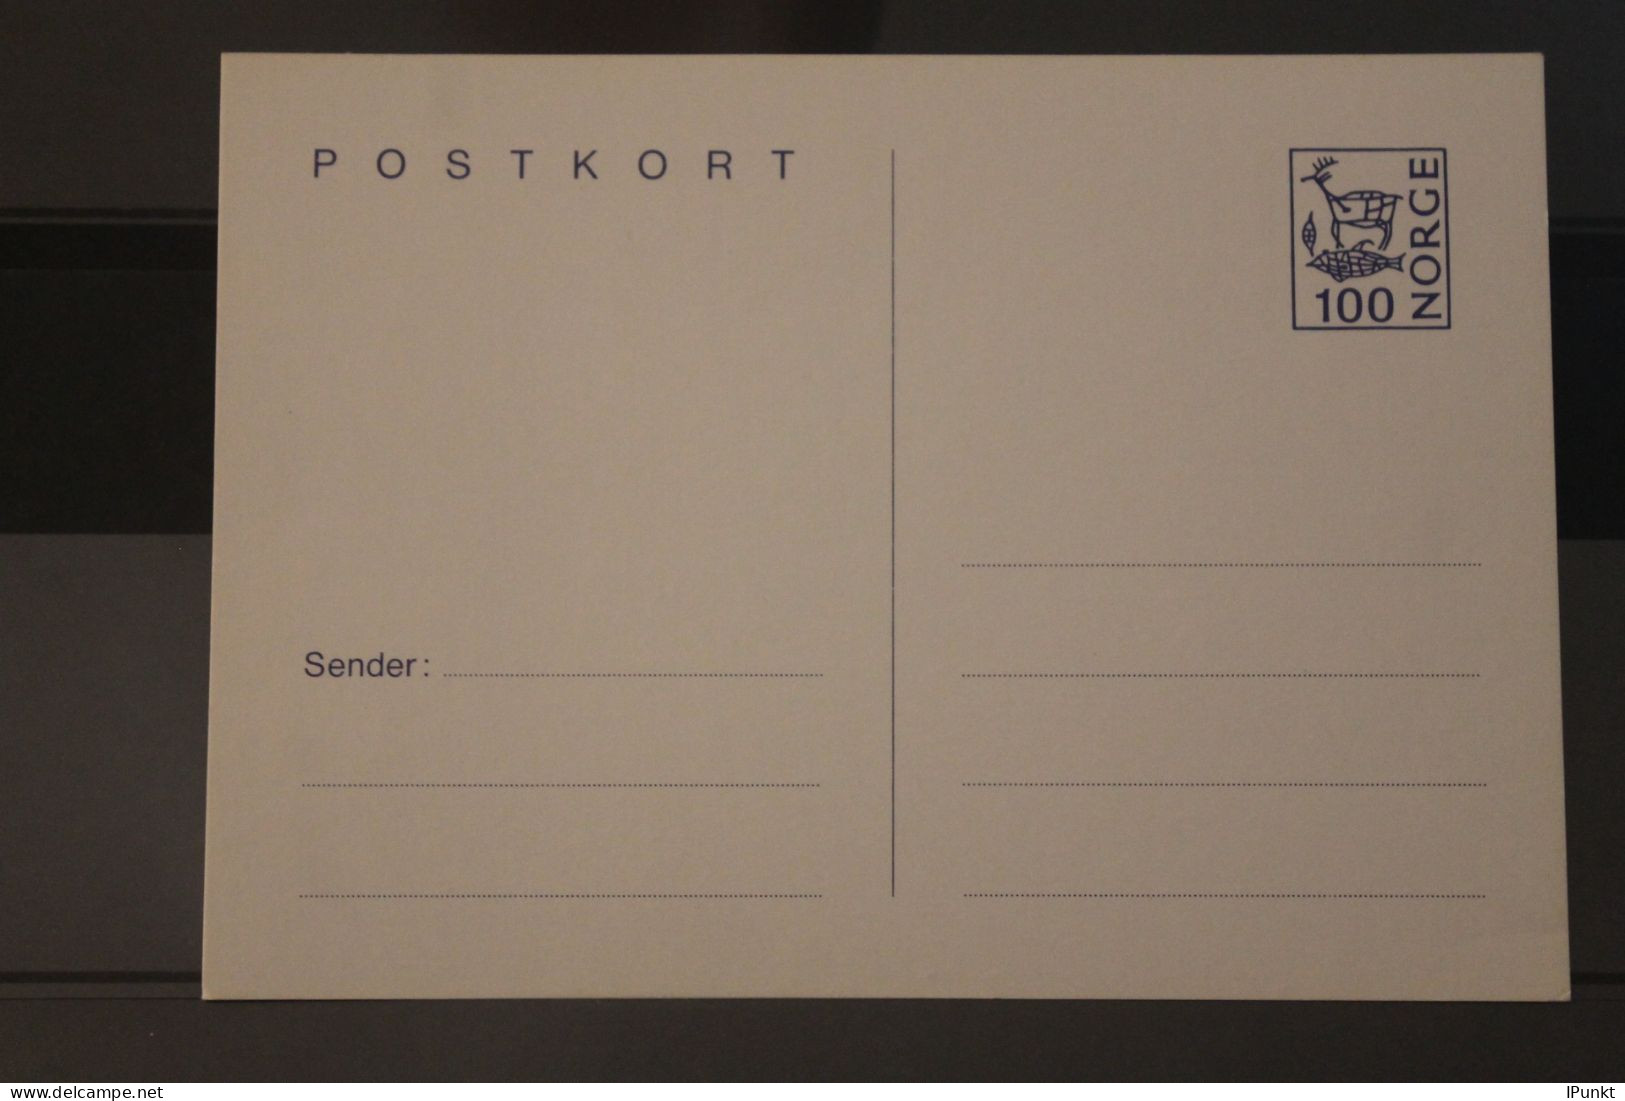 Norwegen Vmtl. 1983; Postkarte; 1 Kr., Ungebraucht - Entiers Postaux